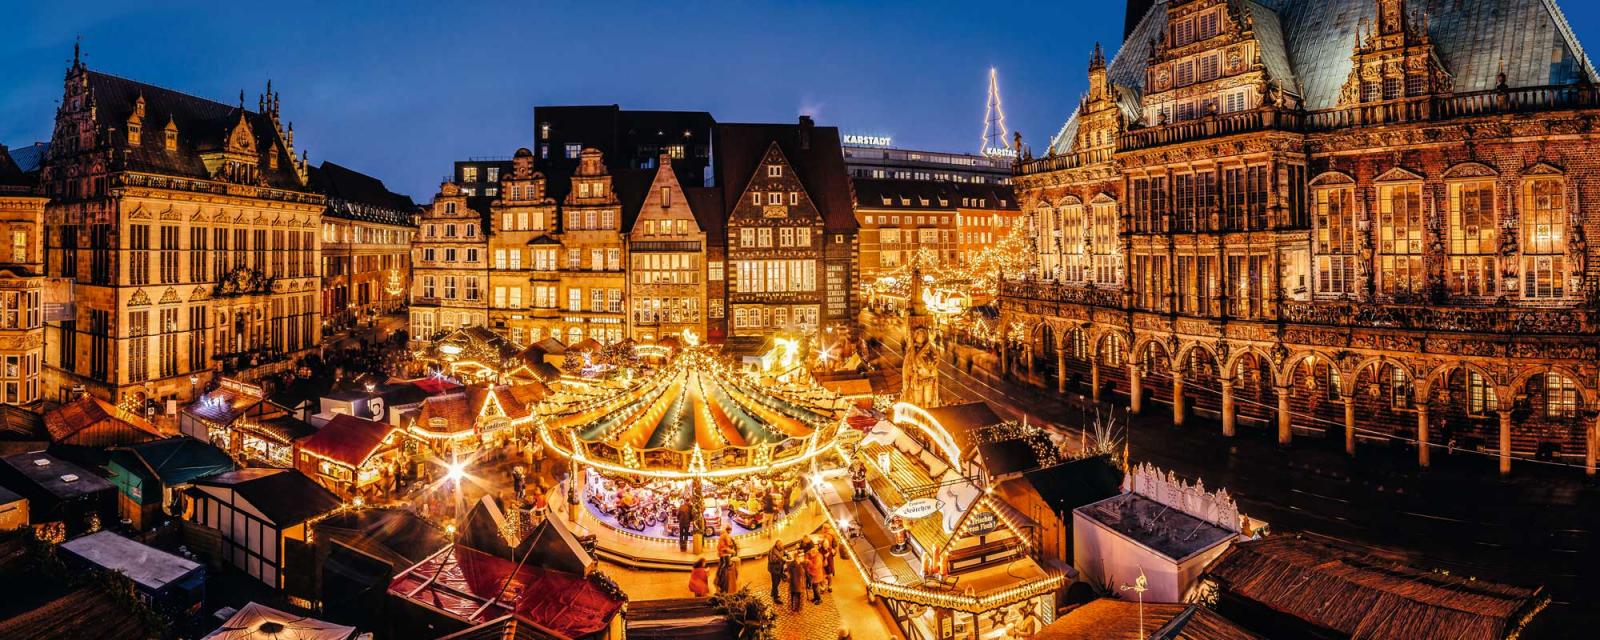 Beleef een romantisch kerstfeest in Hanzestad Bremen 